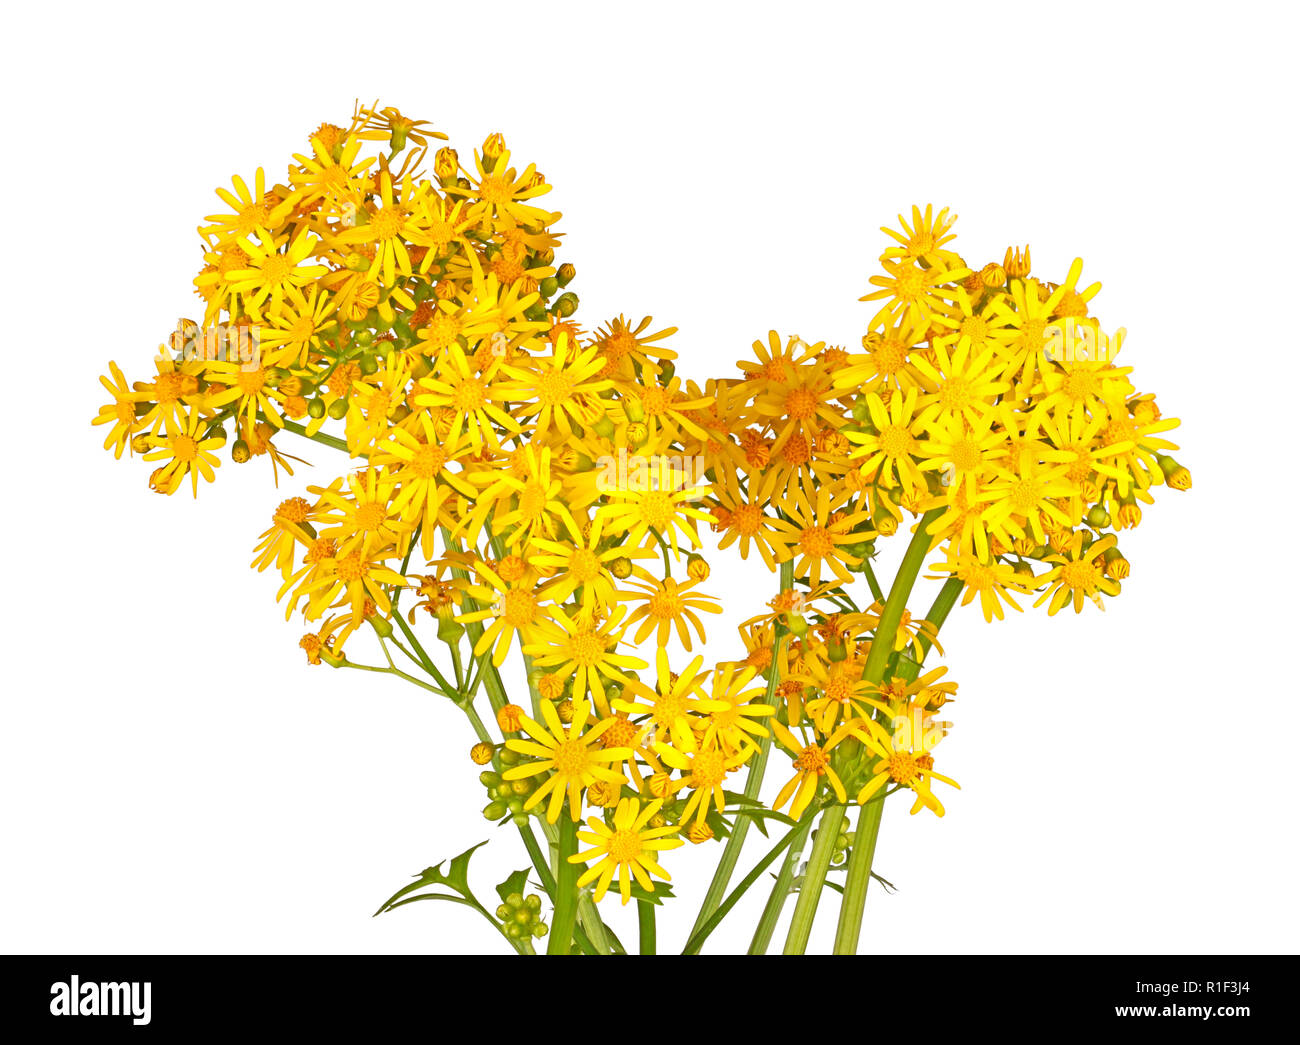 Di colore giallo brillante fiori di primavera del North American native cressleaf erbaccia groundsel o butterweed (Packera glabella, precedentemente Senecio glabellus) isolat Foto Stock